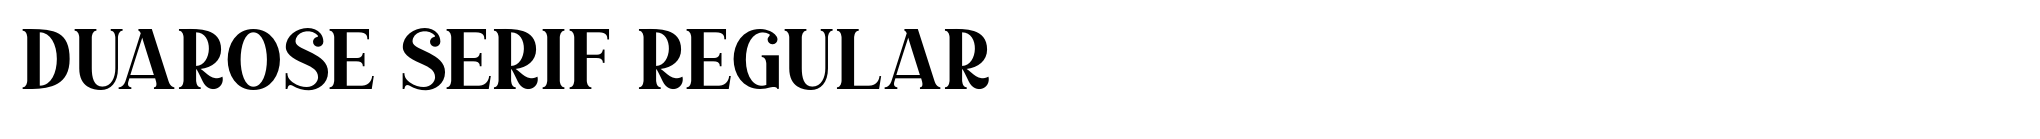 Duarose Serif Regular image